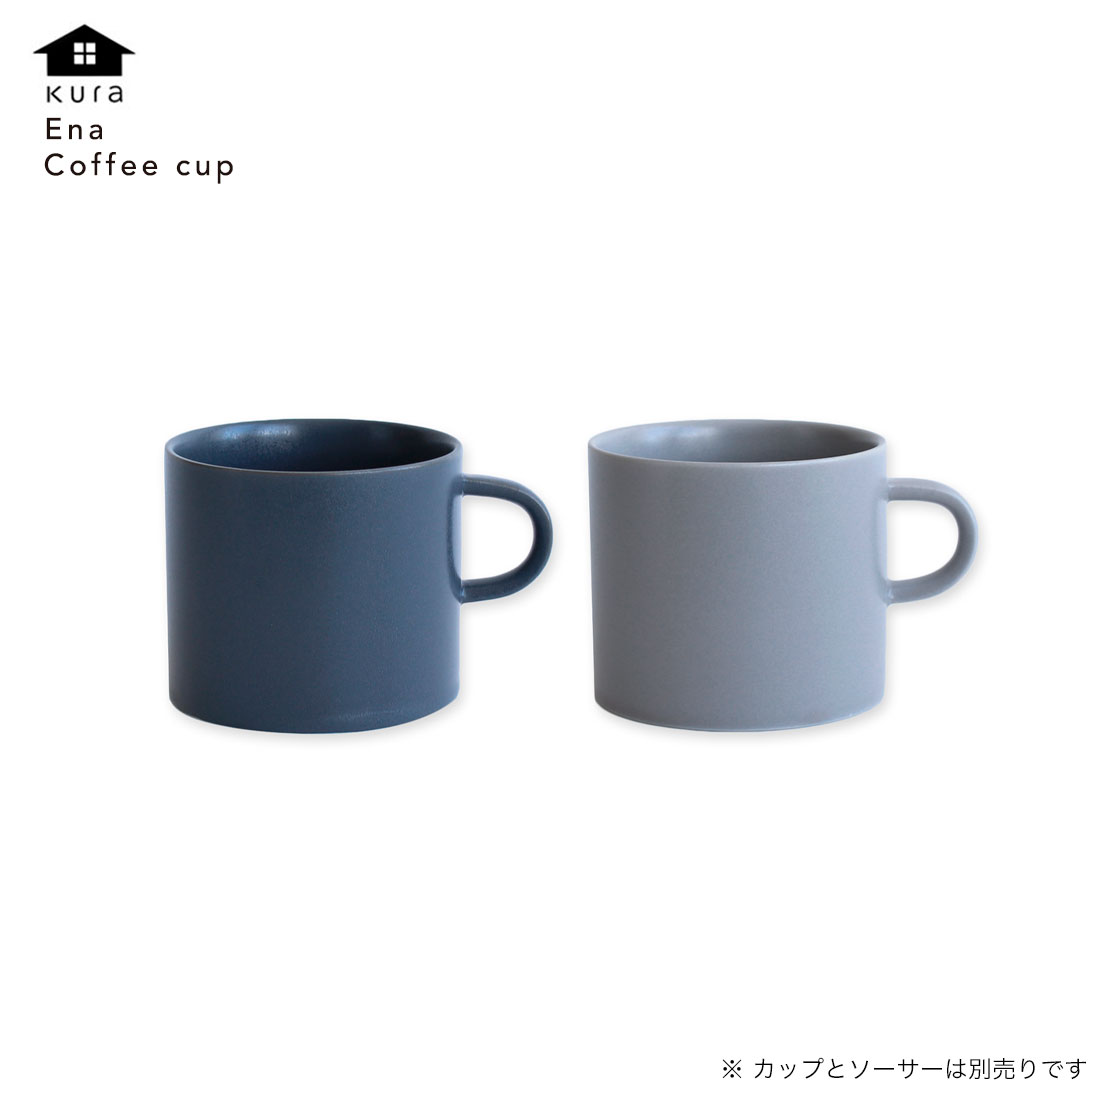 kura クラ Ena Coffee Cup エナ コーヒーカップ ku0012 ku0013 日本製 カップとソーサーは別売りです